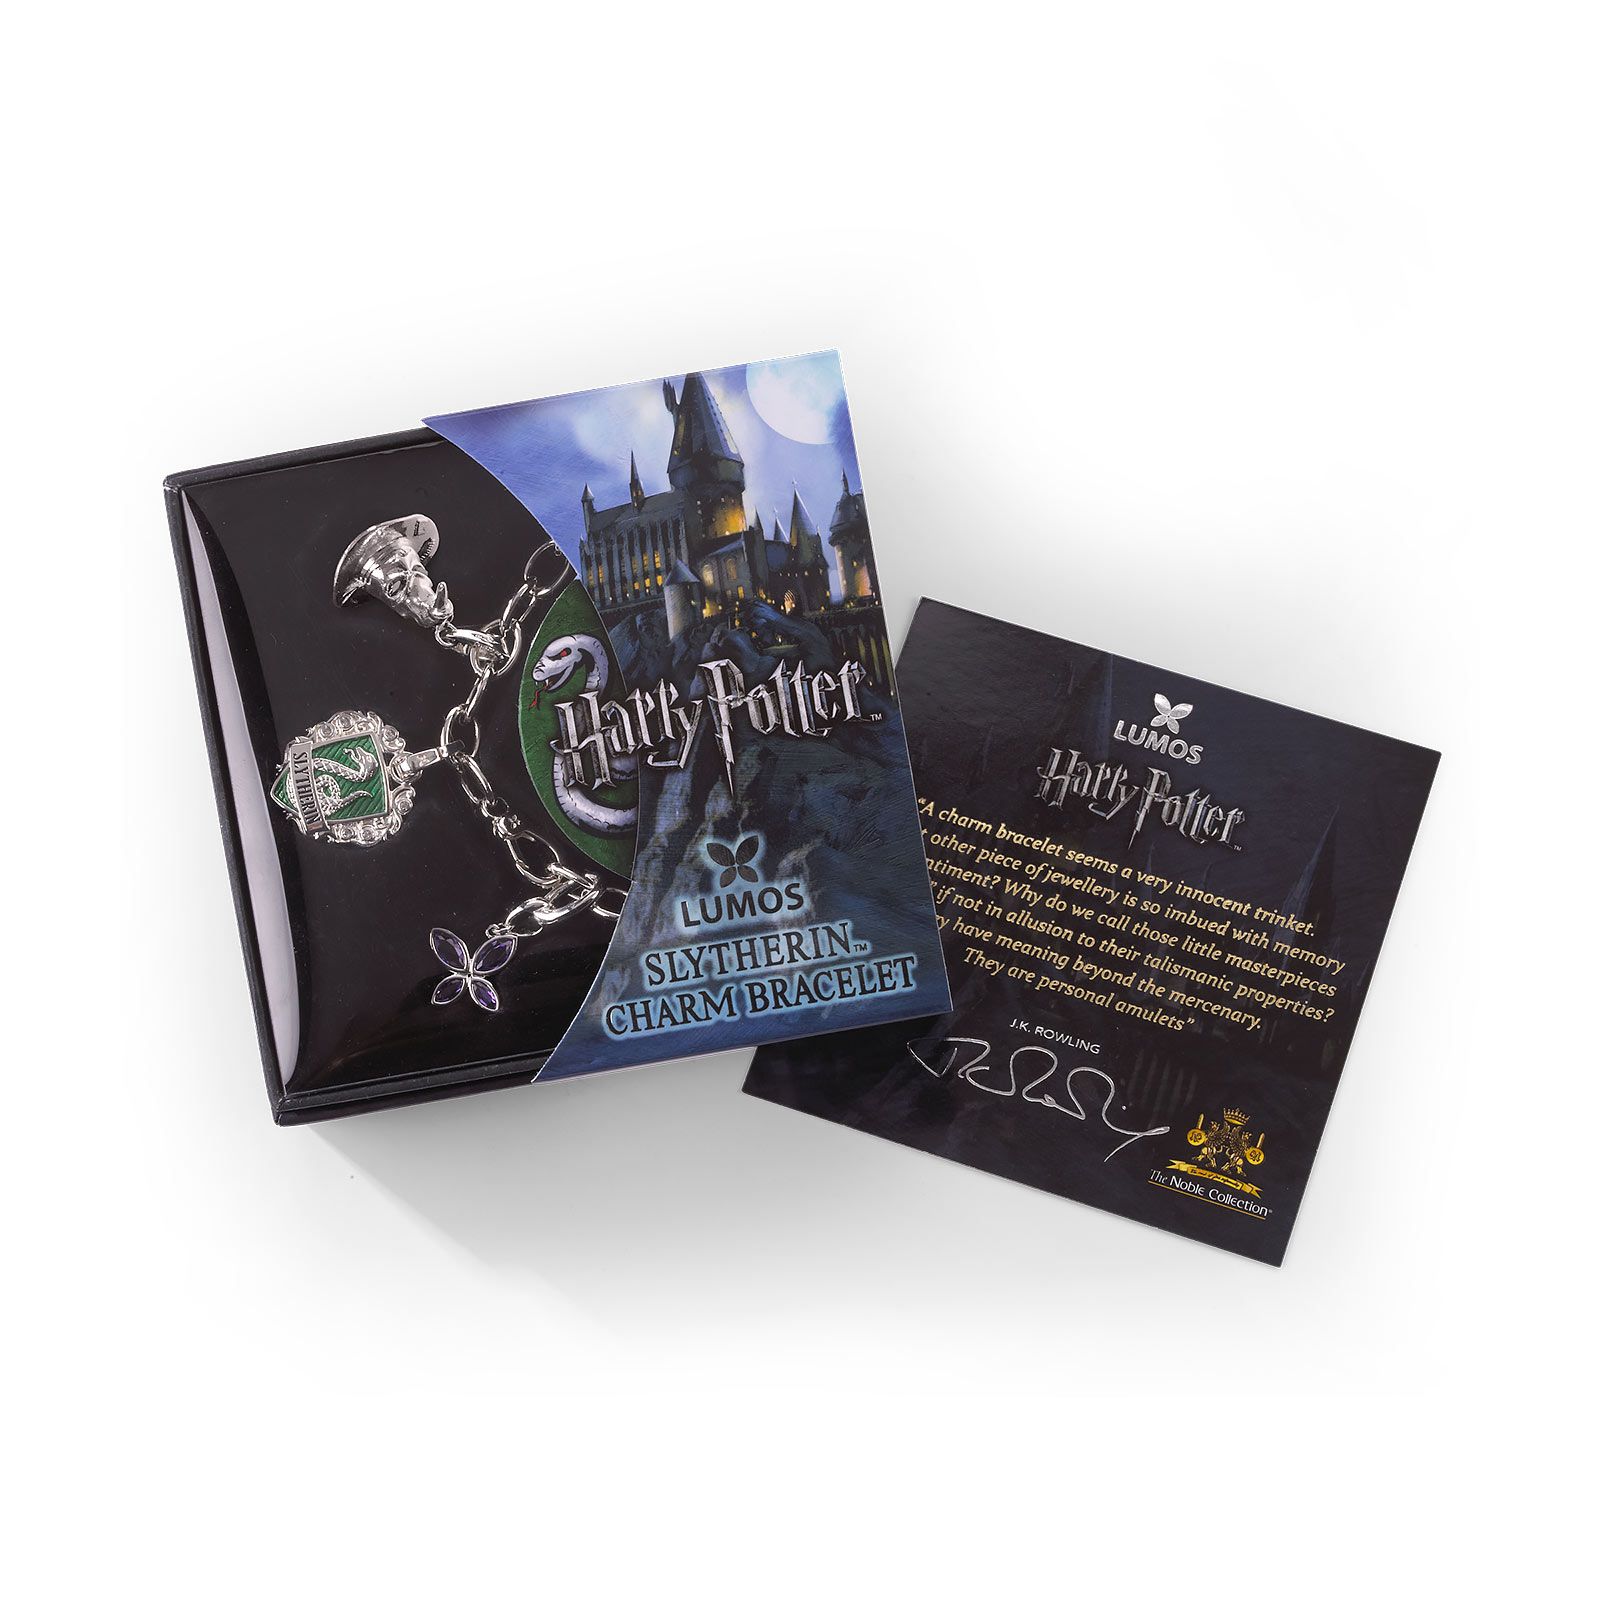 Harry Potter - Bracelet Charm Lumos Slytherin